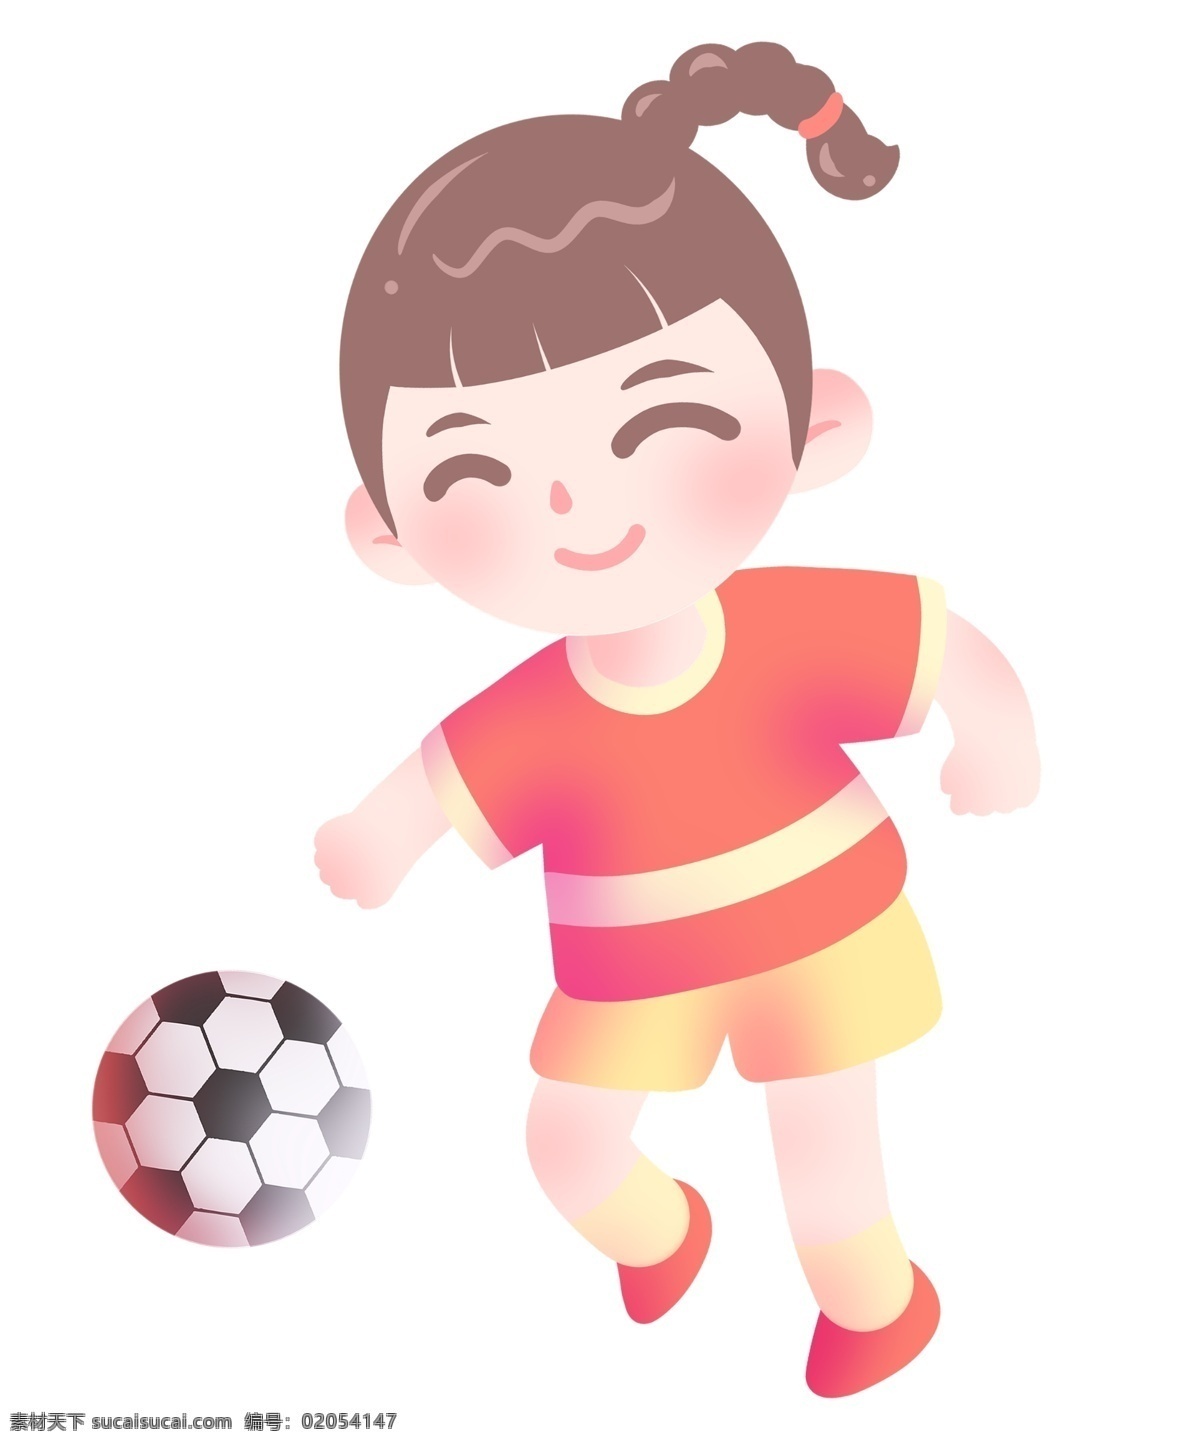 圆形 足球 小女孩 运动健身插画 圆形足球 健身的小女孩 踢球的小女孩 足球插画 开心的小女孩